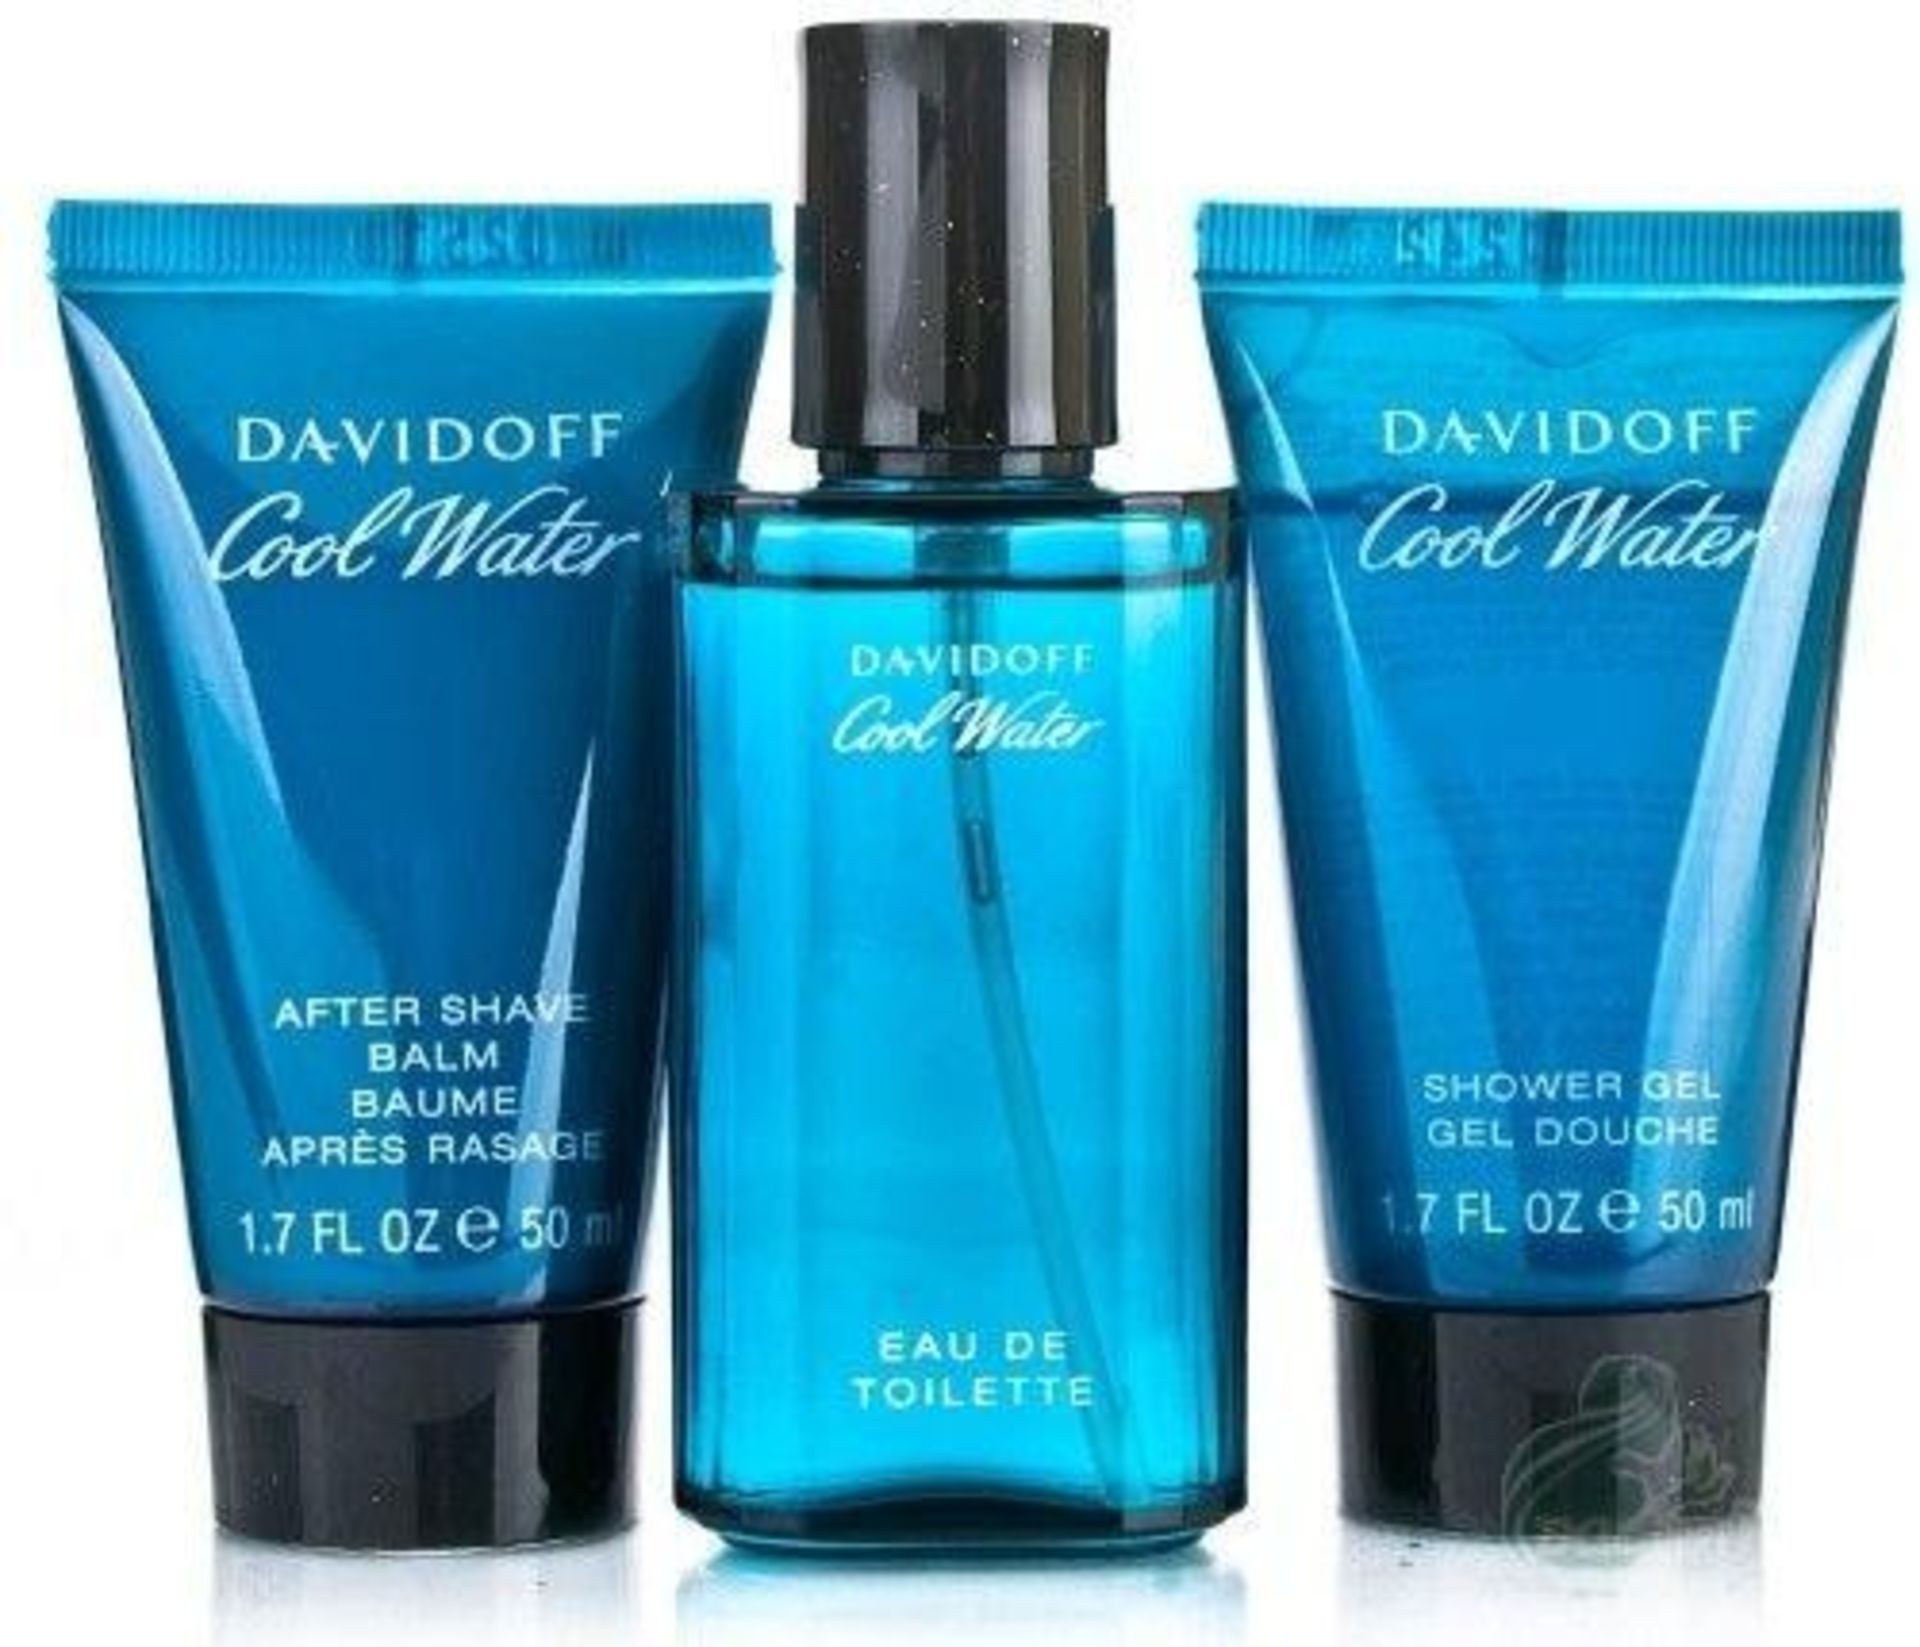 V Brand New Davidoff Cool Water Eau De Toilette Gift Set Including Shower Gel (50ml) After Shave ( - Image 2 of 2